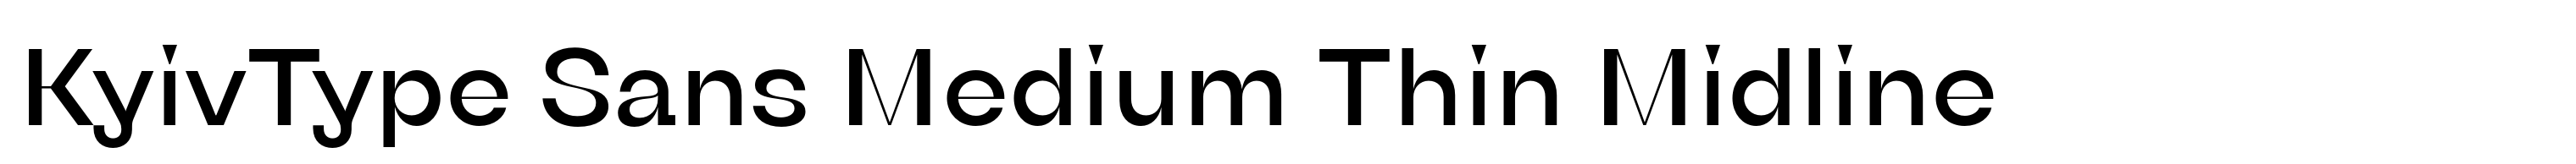 KyivType Sans Medium Thin Midline